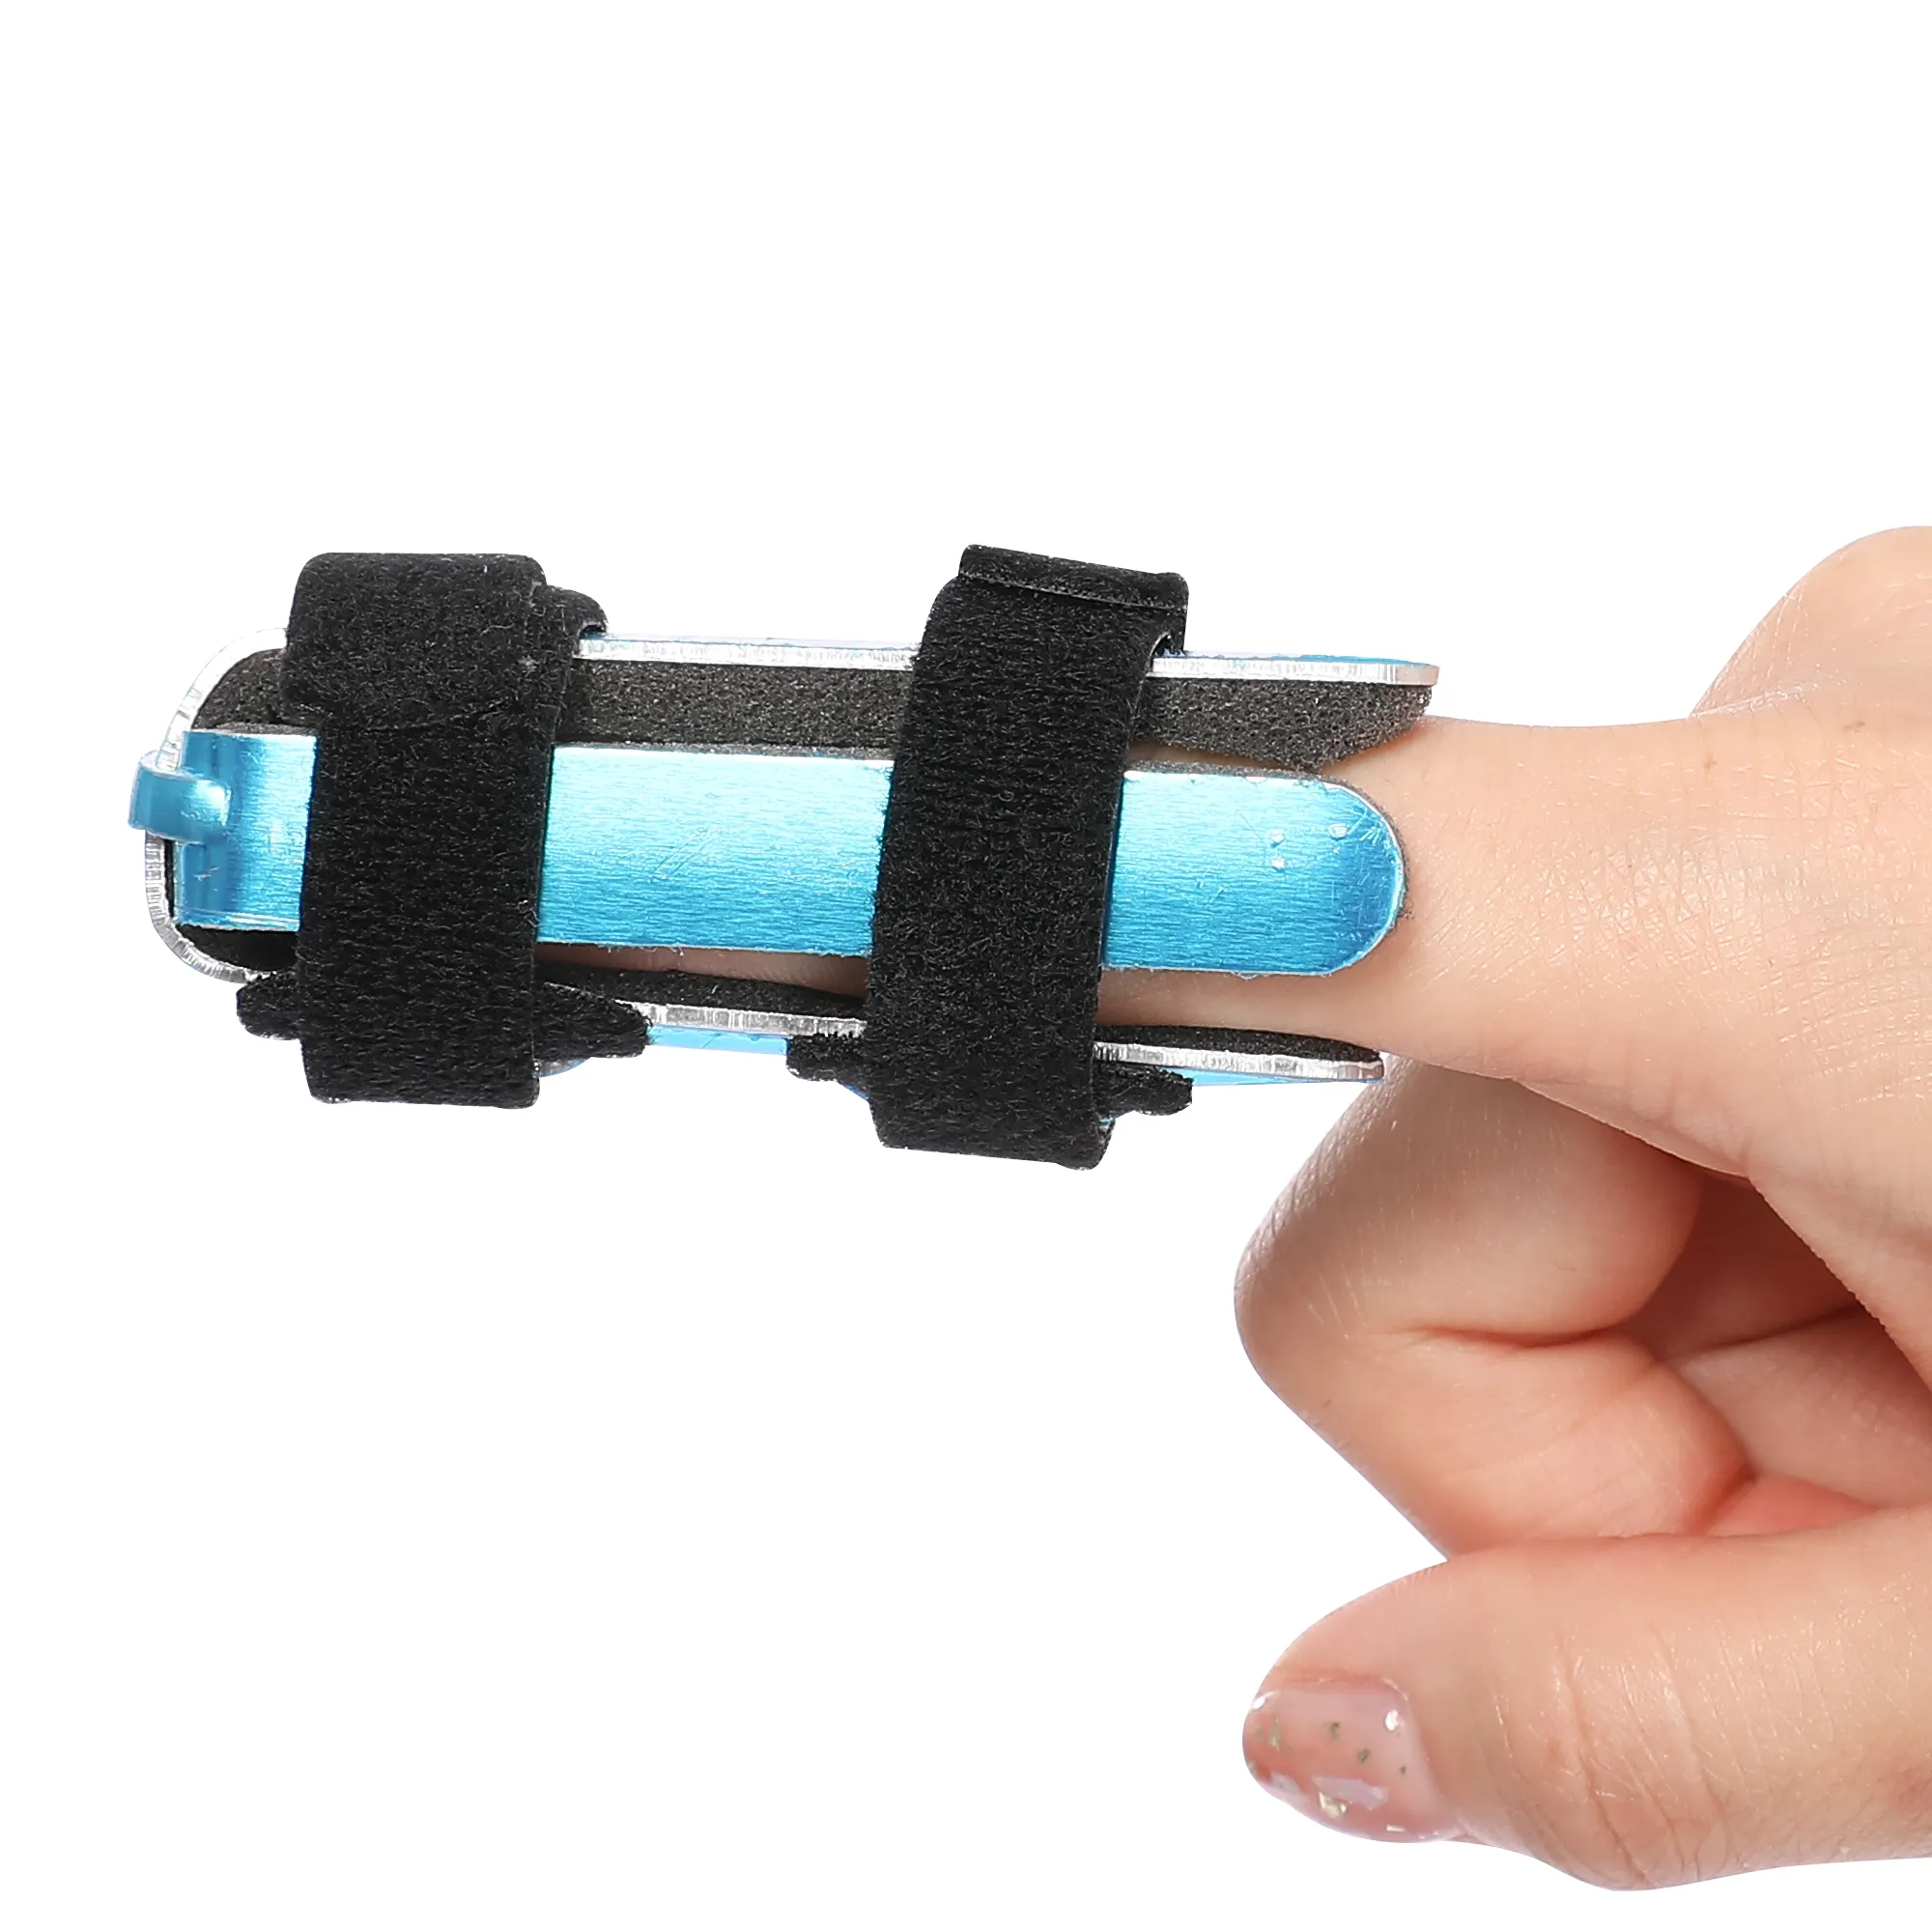 Kim loại điều chỉnh giữa Immobilizer hỗ trợ Brace gãy xương bảo vệ nẹp cho ngón tay để giữ cho nó thẳng